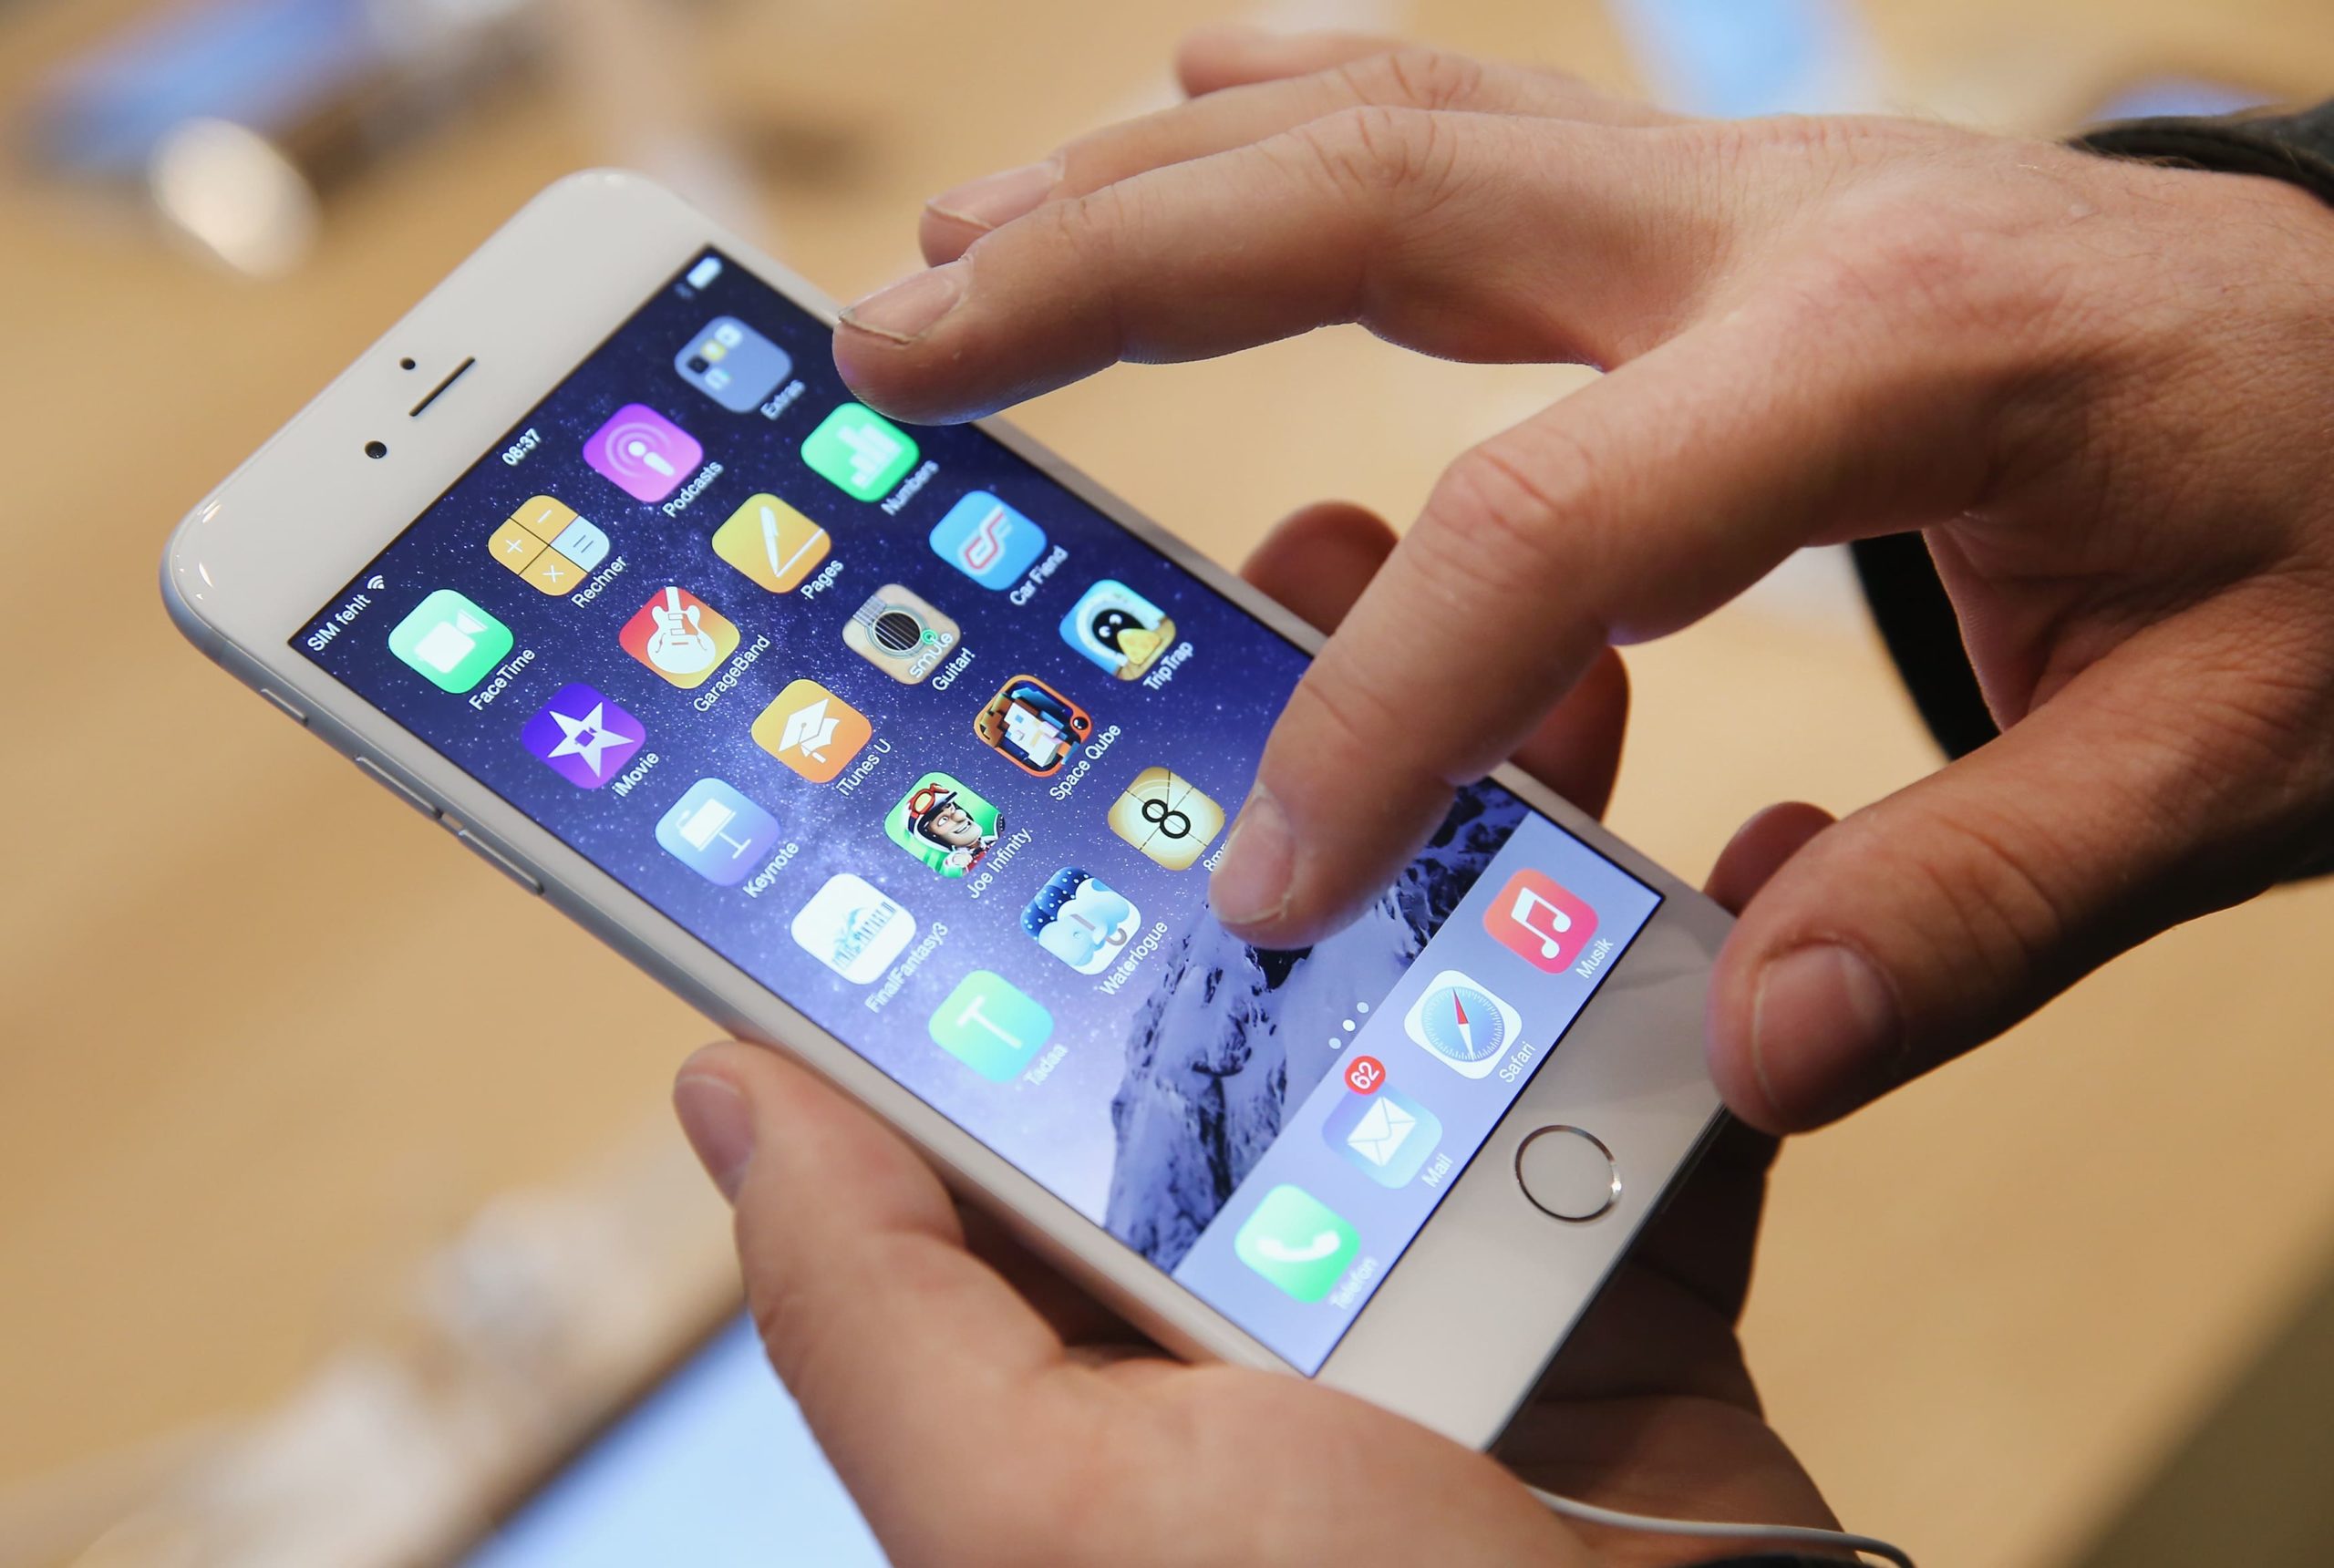 ¿Tienes un iPhone no tan nuevo?  Apple podría bloquearte el uso de iMessage, FaceTime y otros tipos de servicios